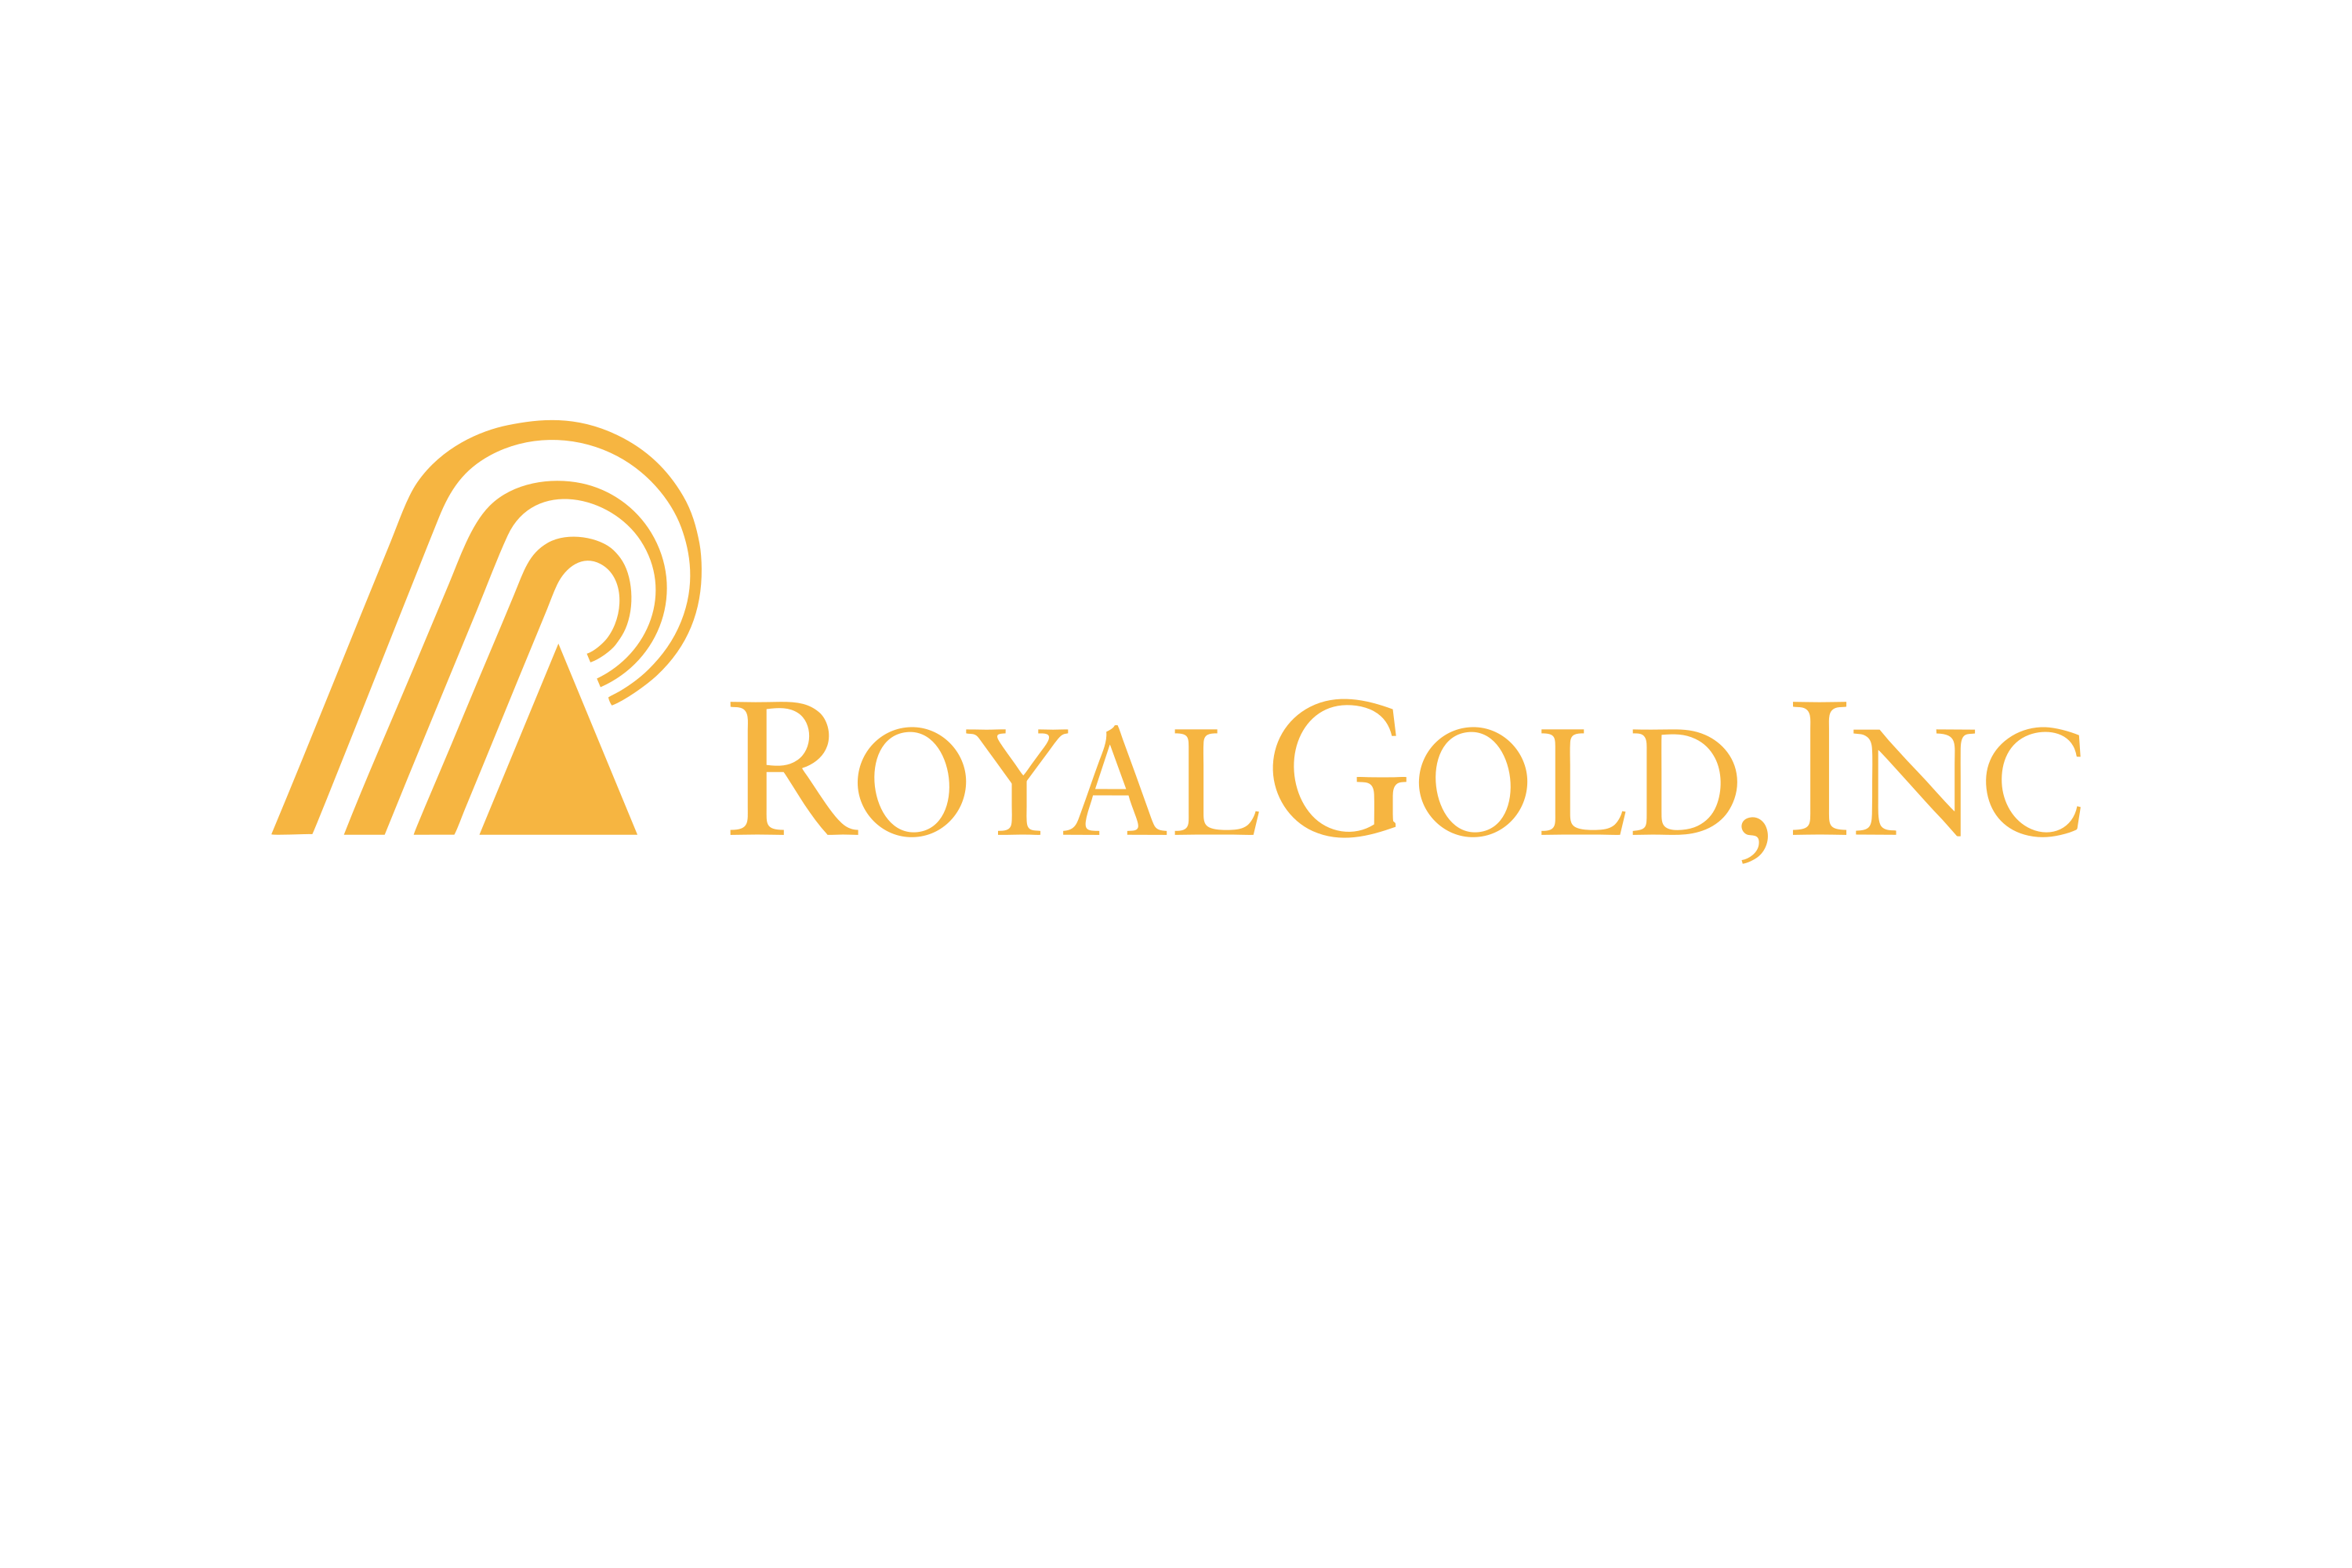 Download Royal Gold Logo in SVG Vector or PNG File Format - Logo.wine